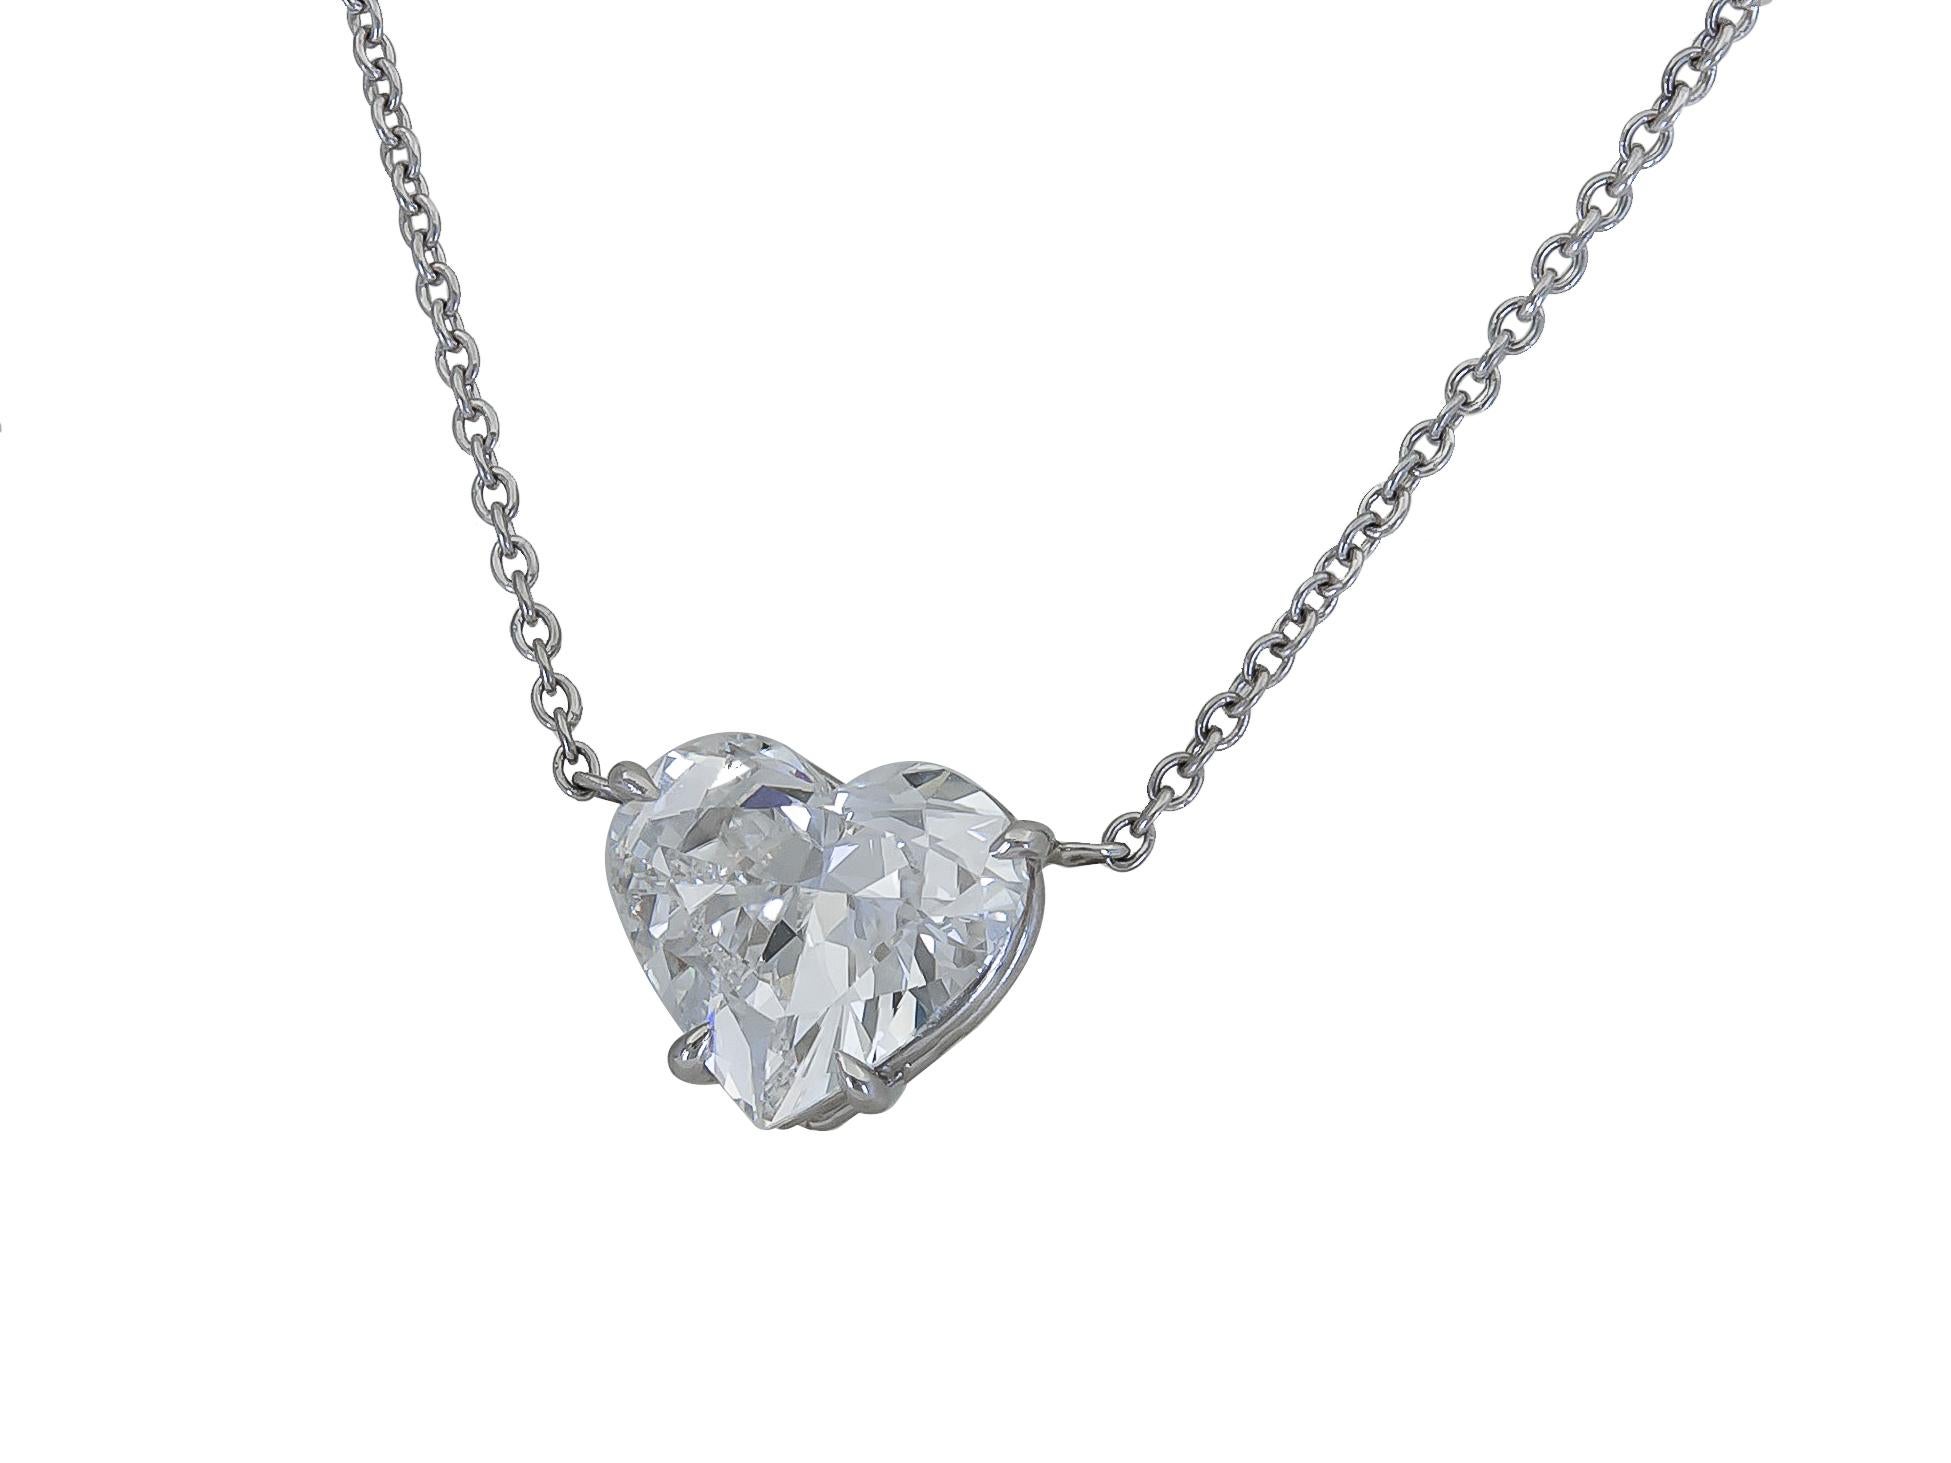 Un collier pendentif classique et intemporel présentant un diamant central en forme de cœur, serti dans une monture en or blanc 18 carats. Pendentif suspendu à une chaîne en or blanc de 15,5 pouces.
Le diamant pèse 1.36 carats et est de couleur F,